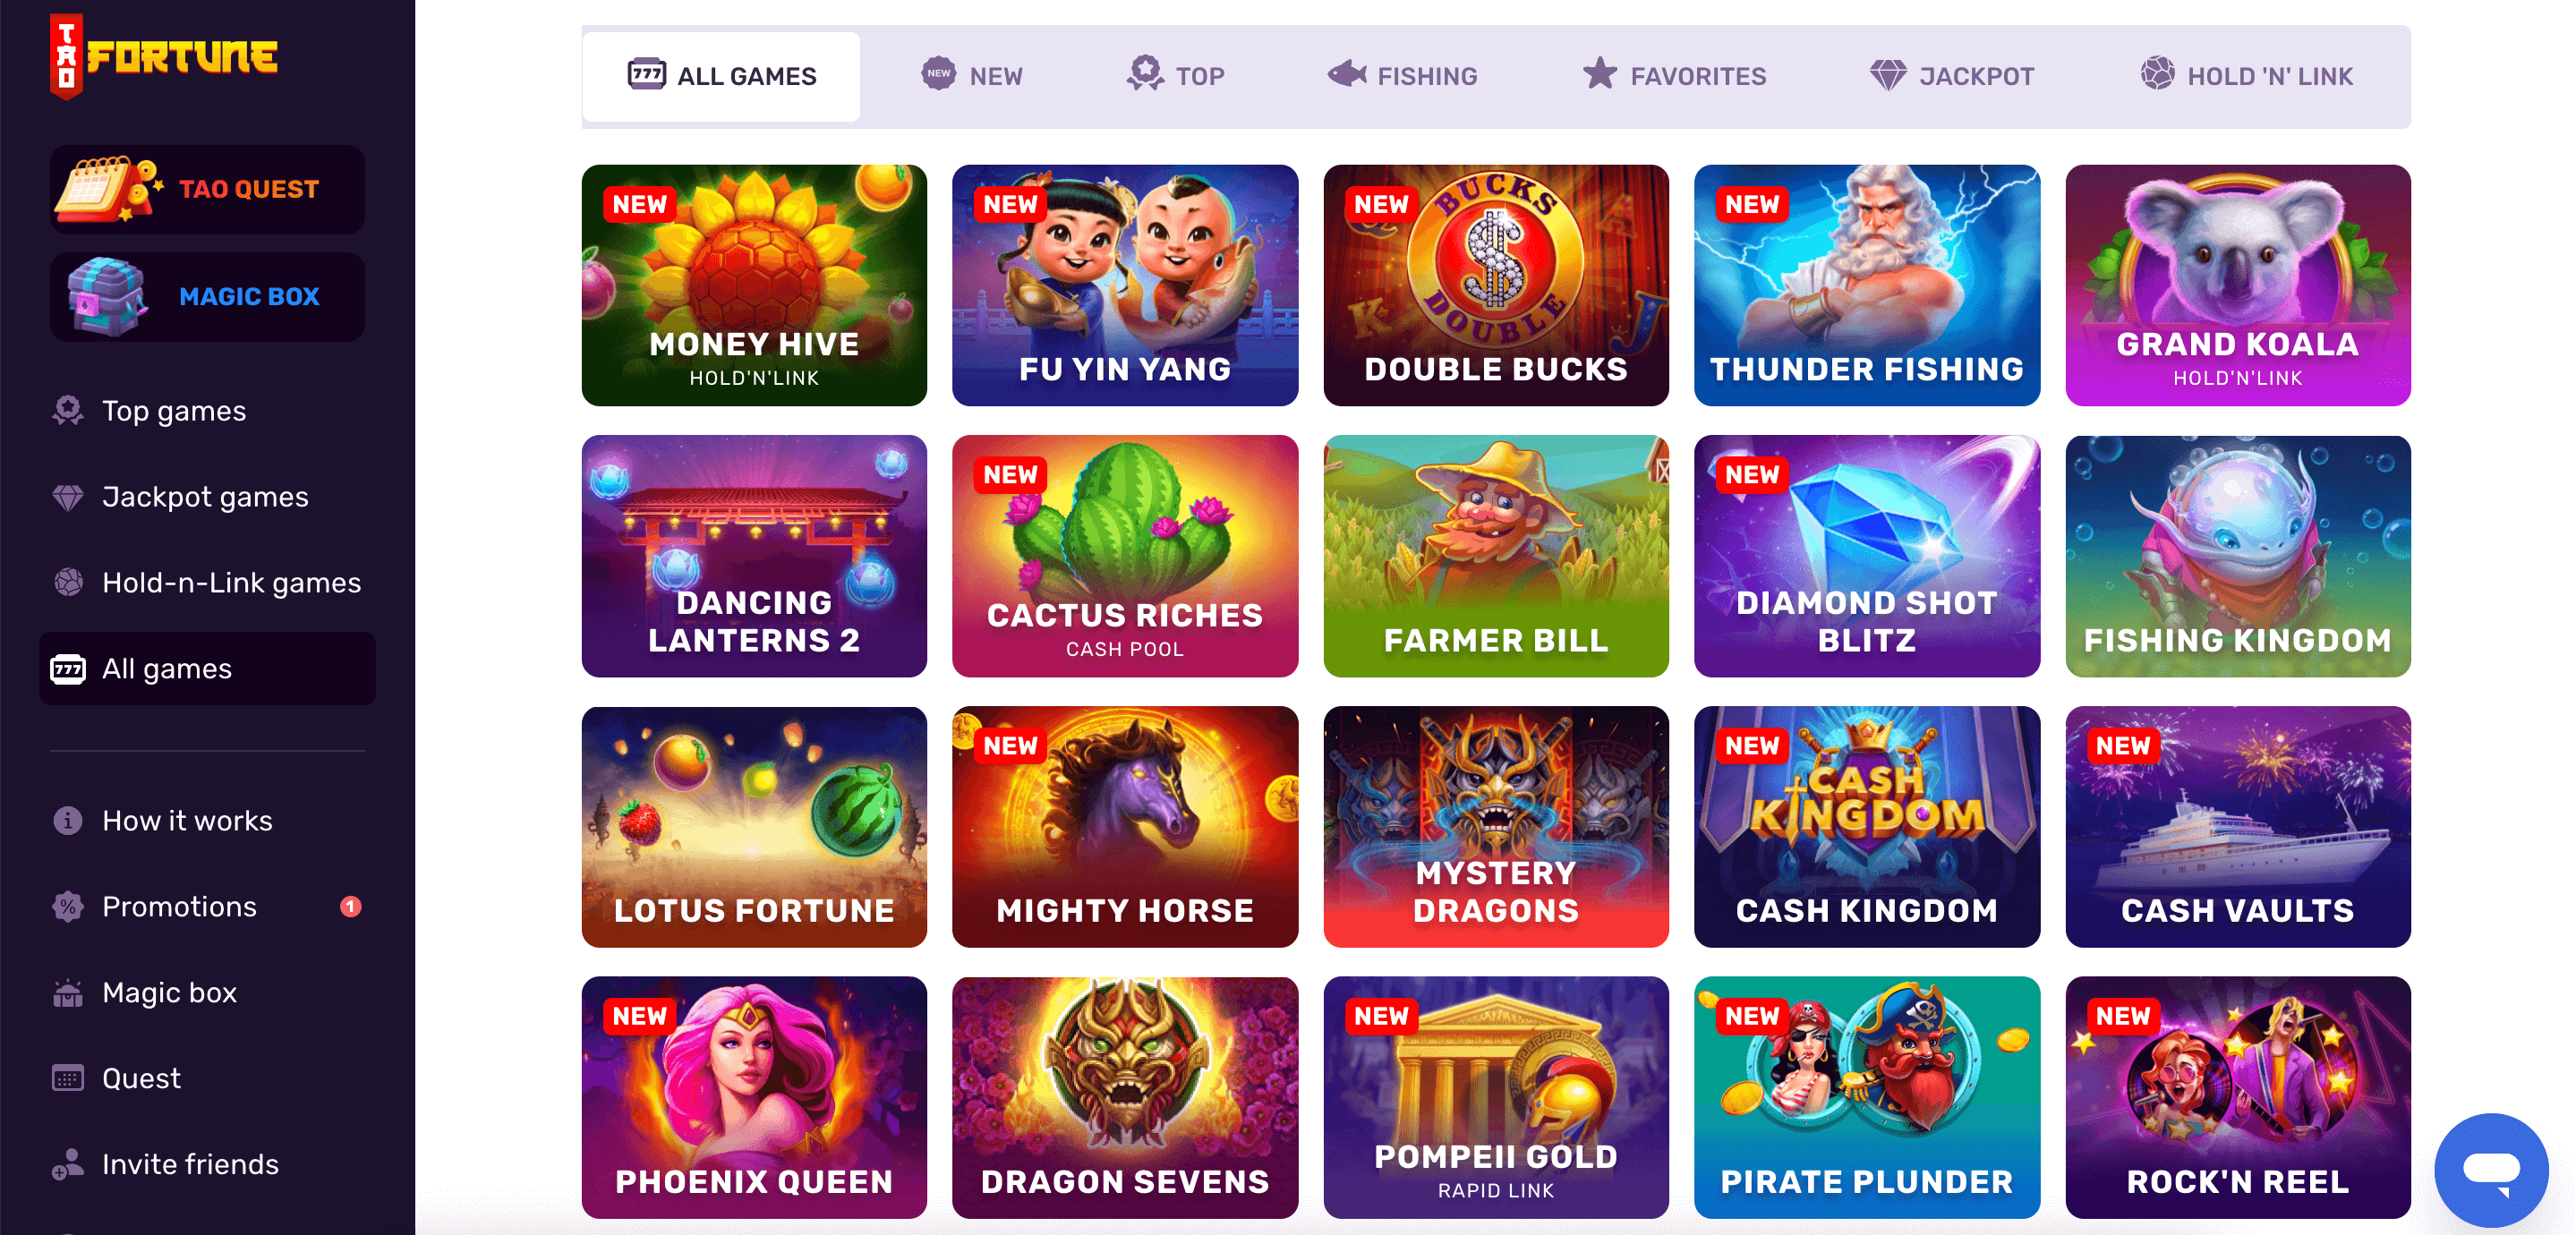 TaoFortune Social Casino Slot Games